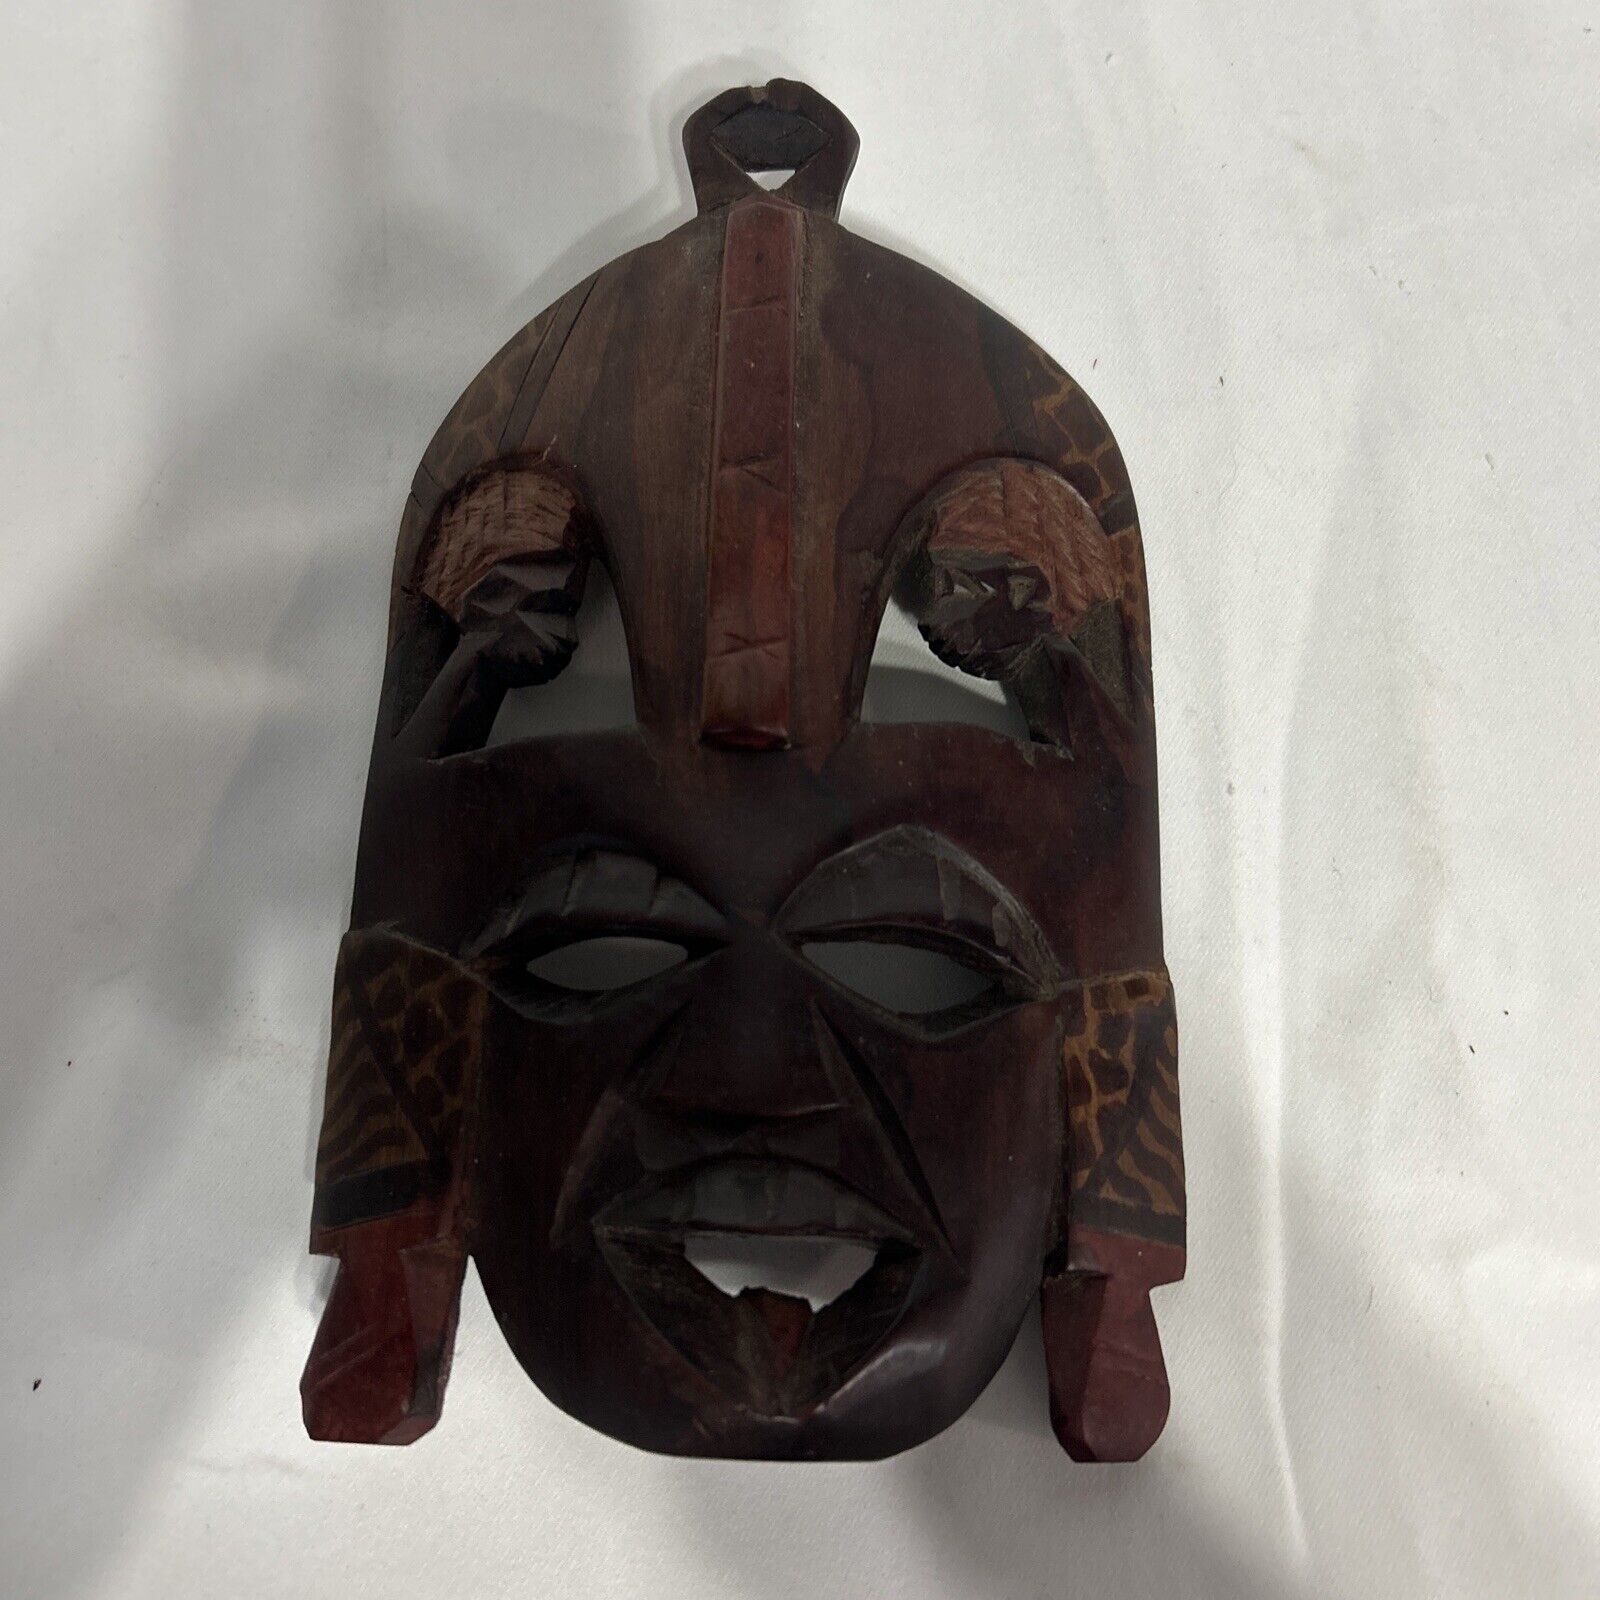 Antique Hand Carved Wood Mask Man's Face Folk Art